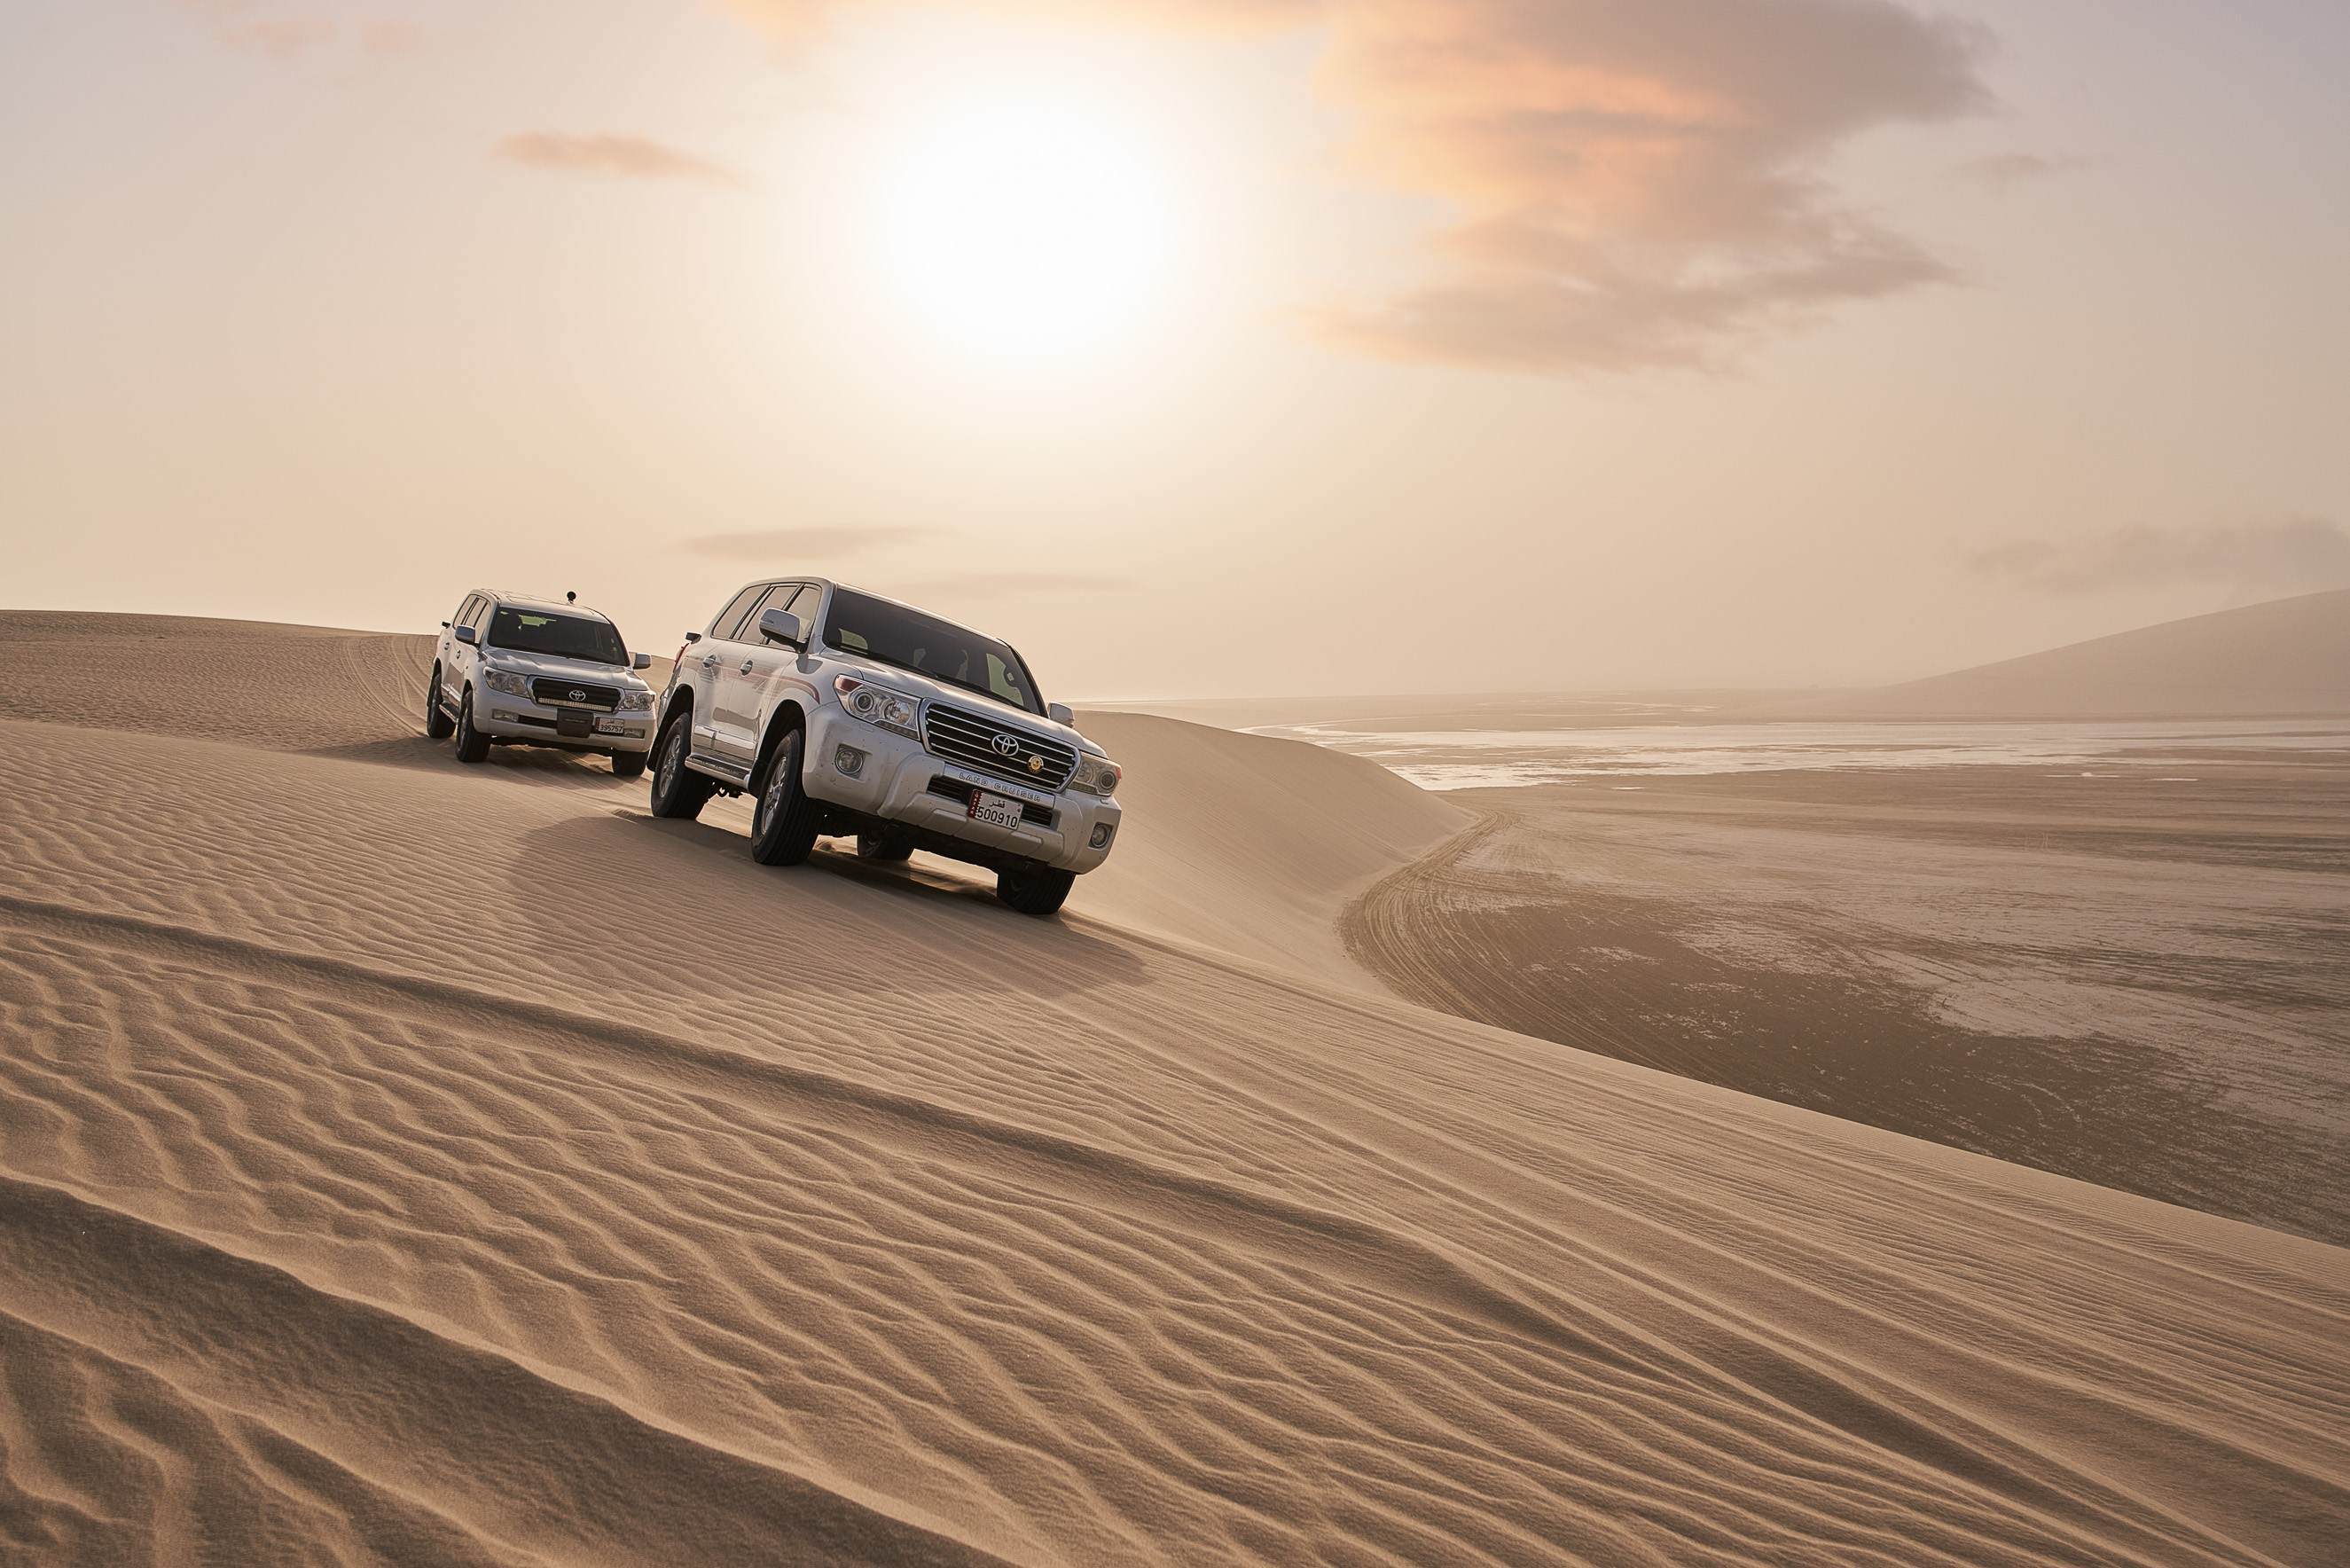 4D/3N Incedible Qatar Tour Package with Desert Safari